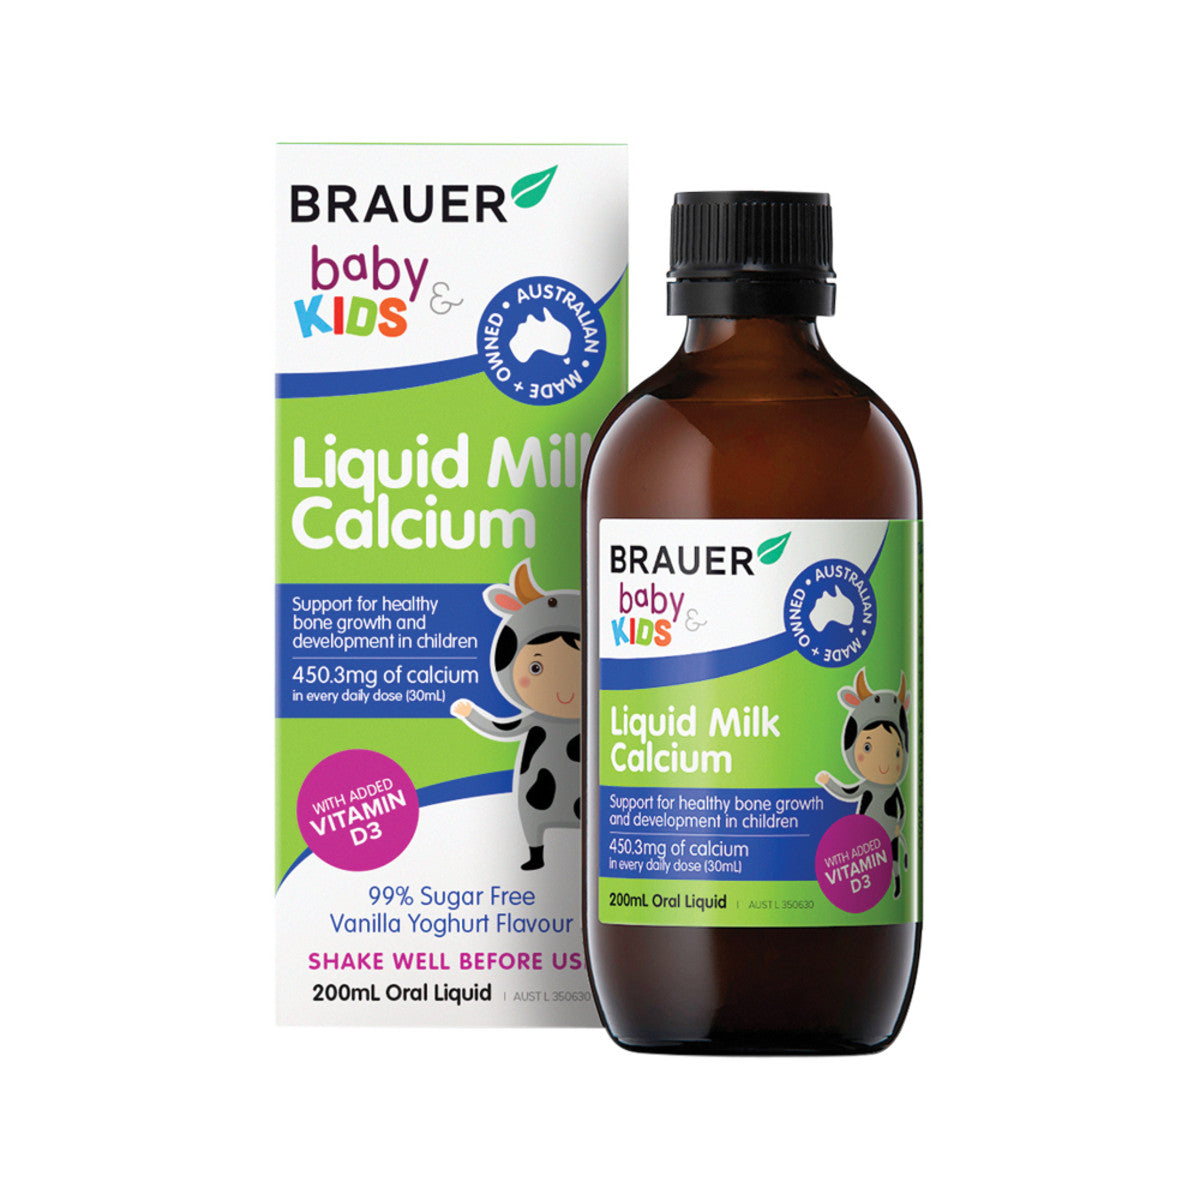 Brauer - Baby & Kids Liquid Milk Calcium (7+ months)